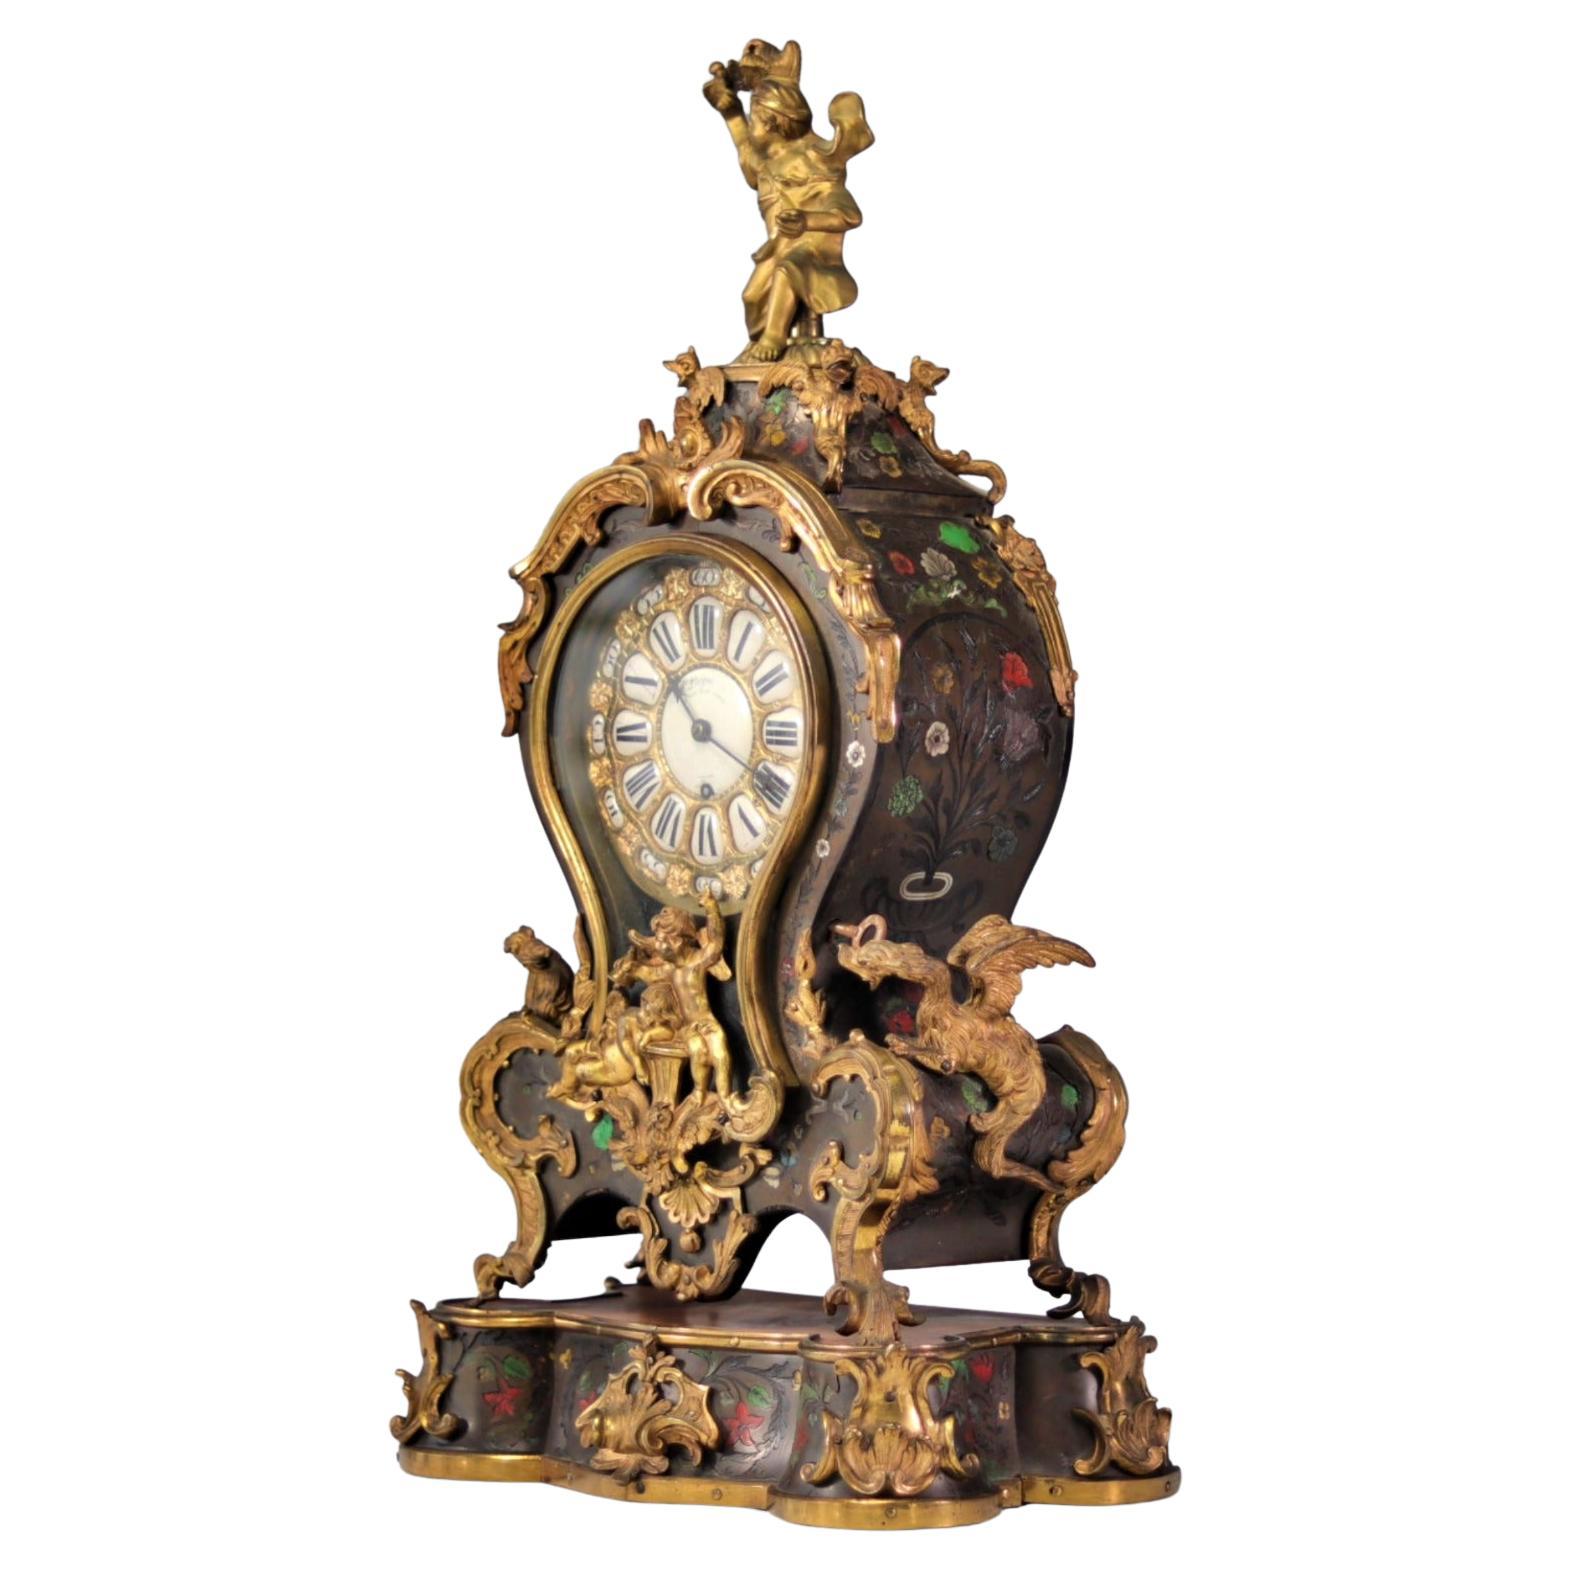 Rare horloge anglaise du 18ème siècle